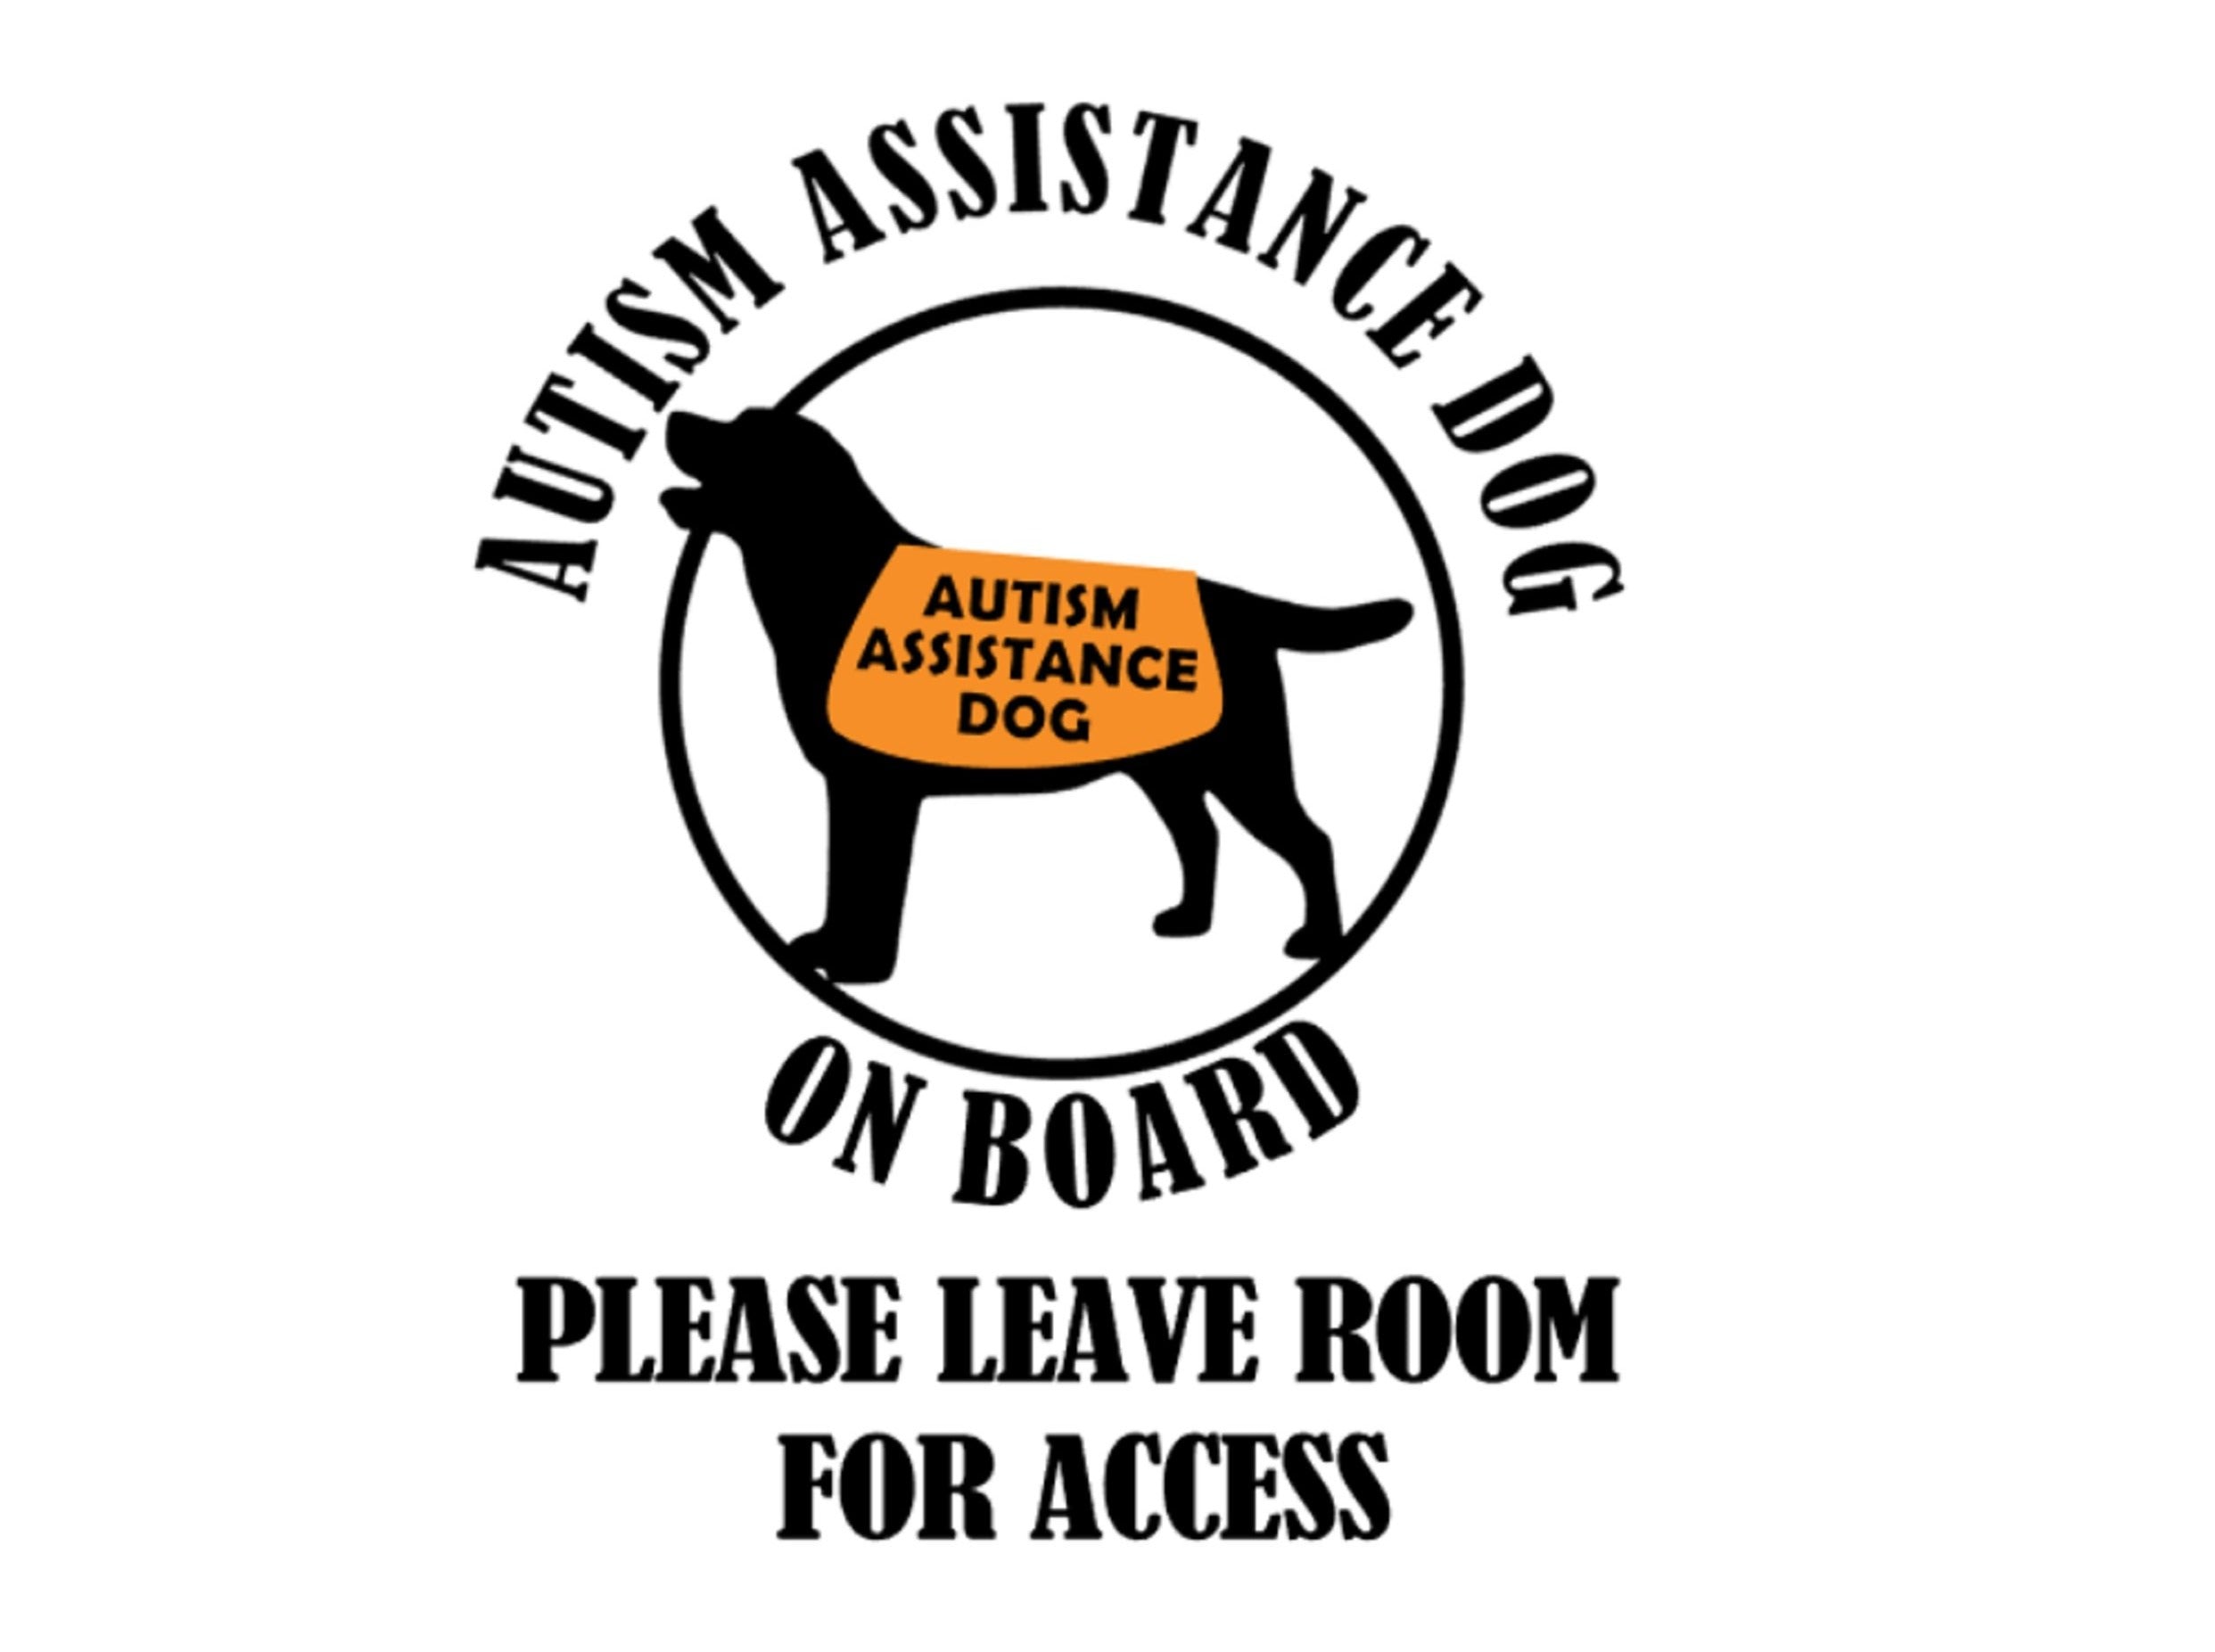 Autism Assistance Dog on Board Car Sticker - My Crafty Dog